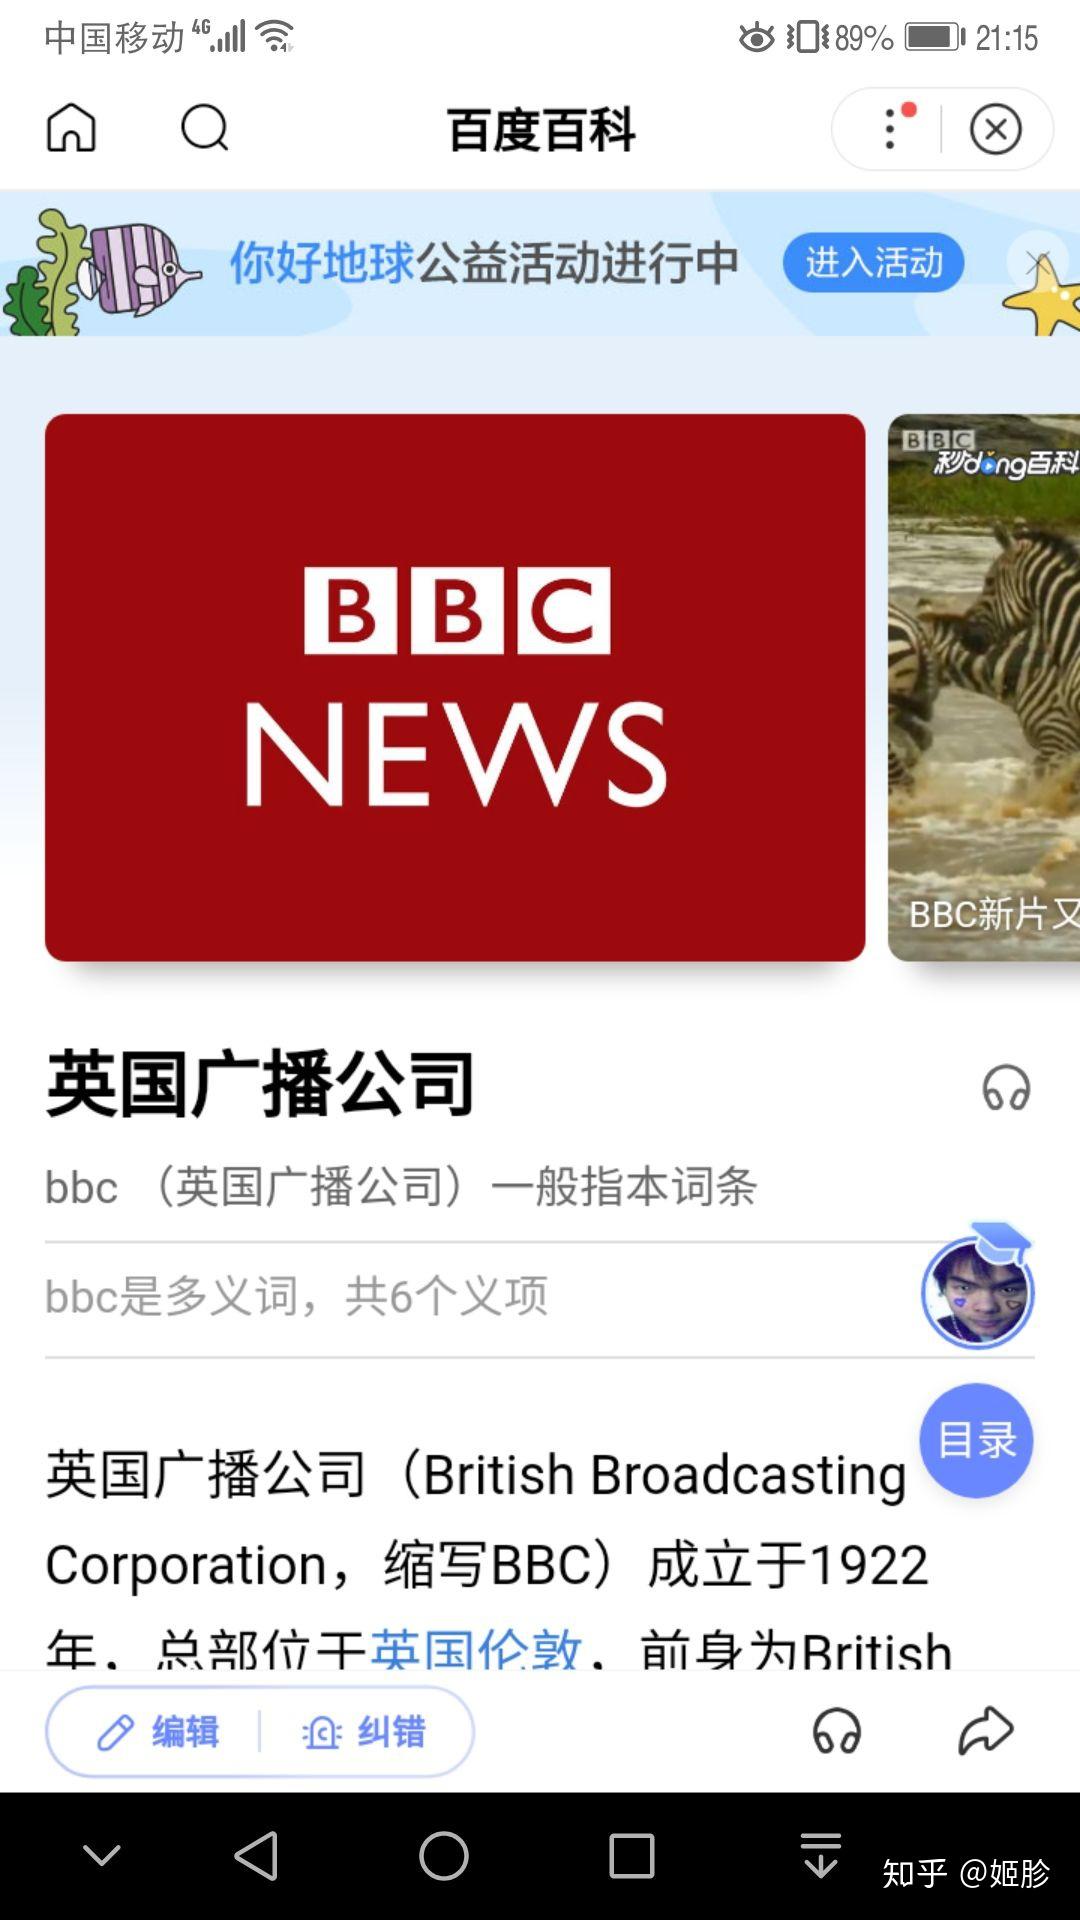 bbc是什么意思?